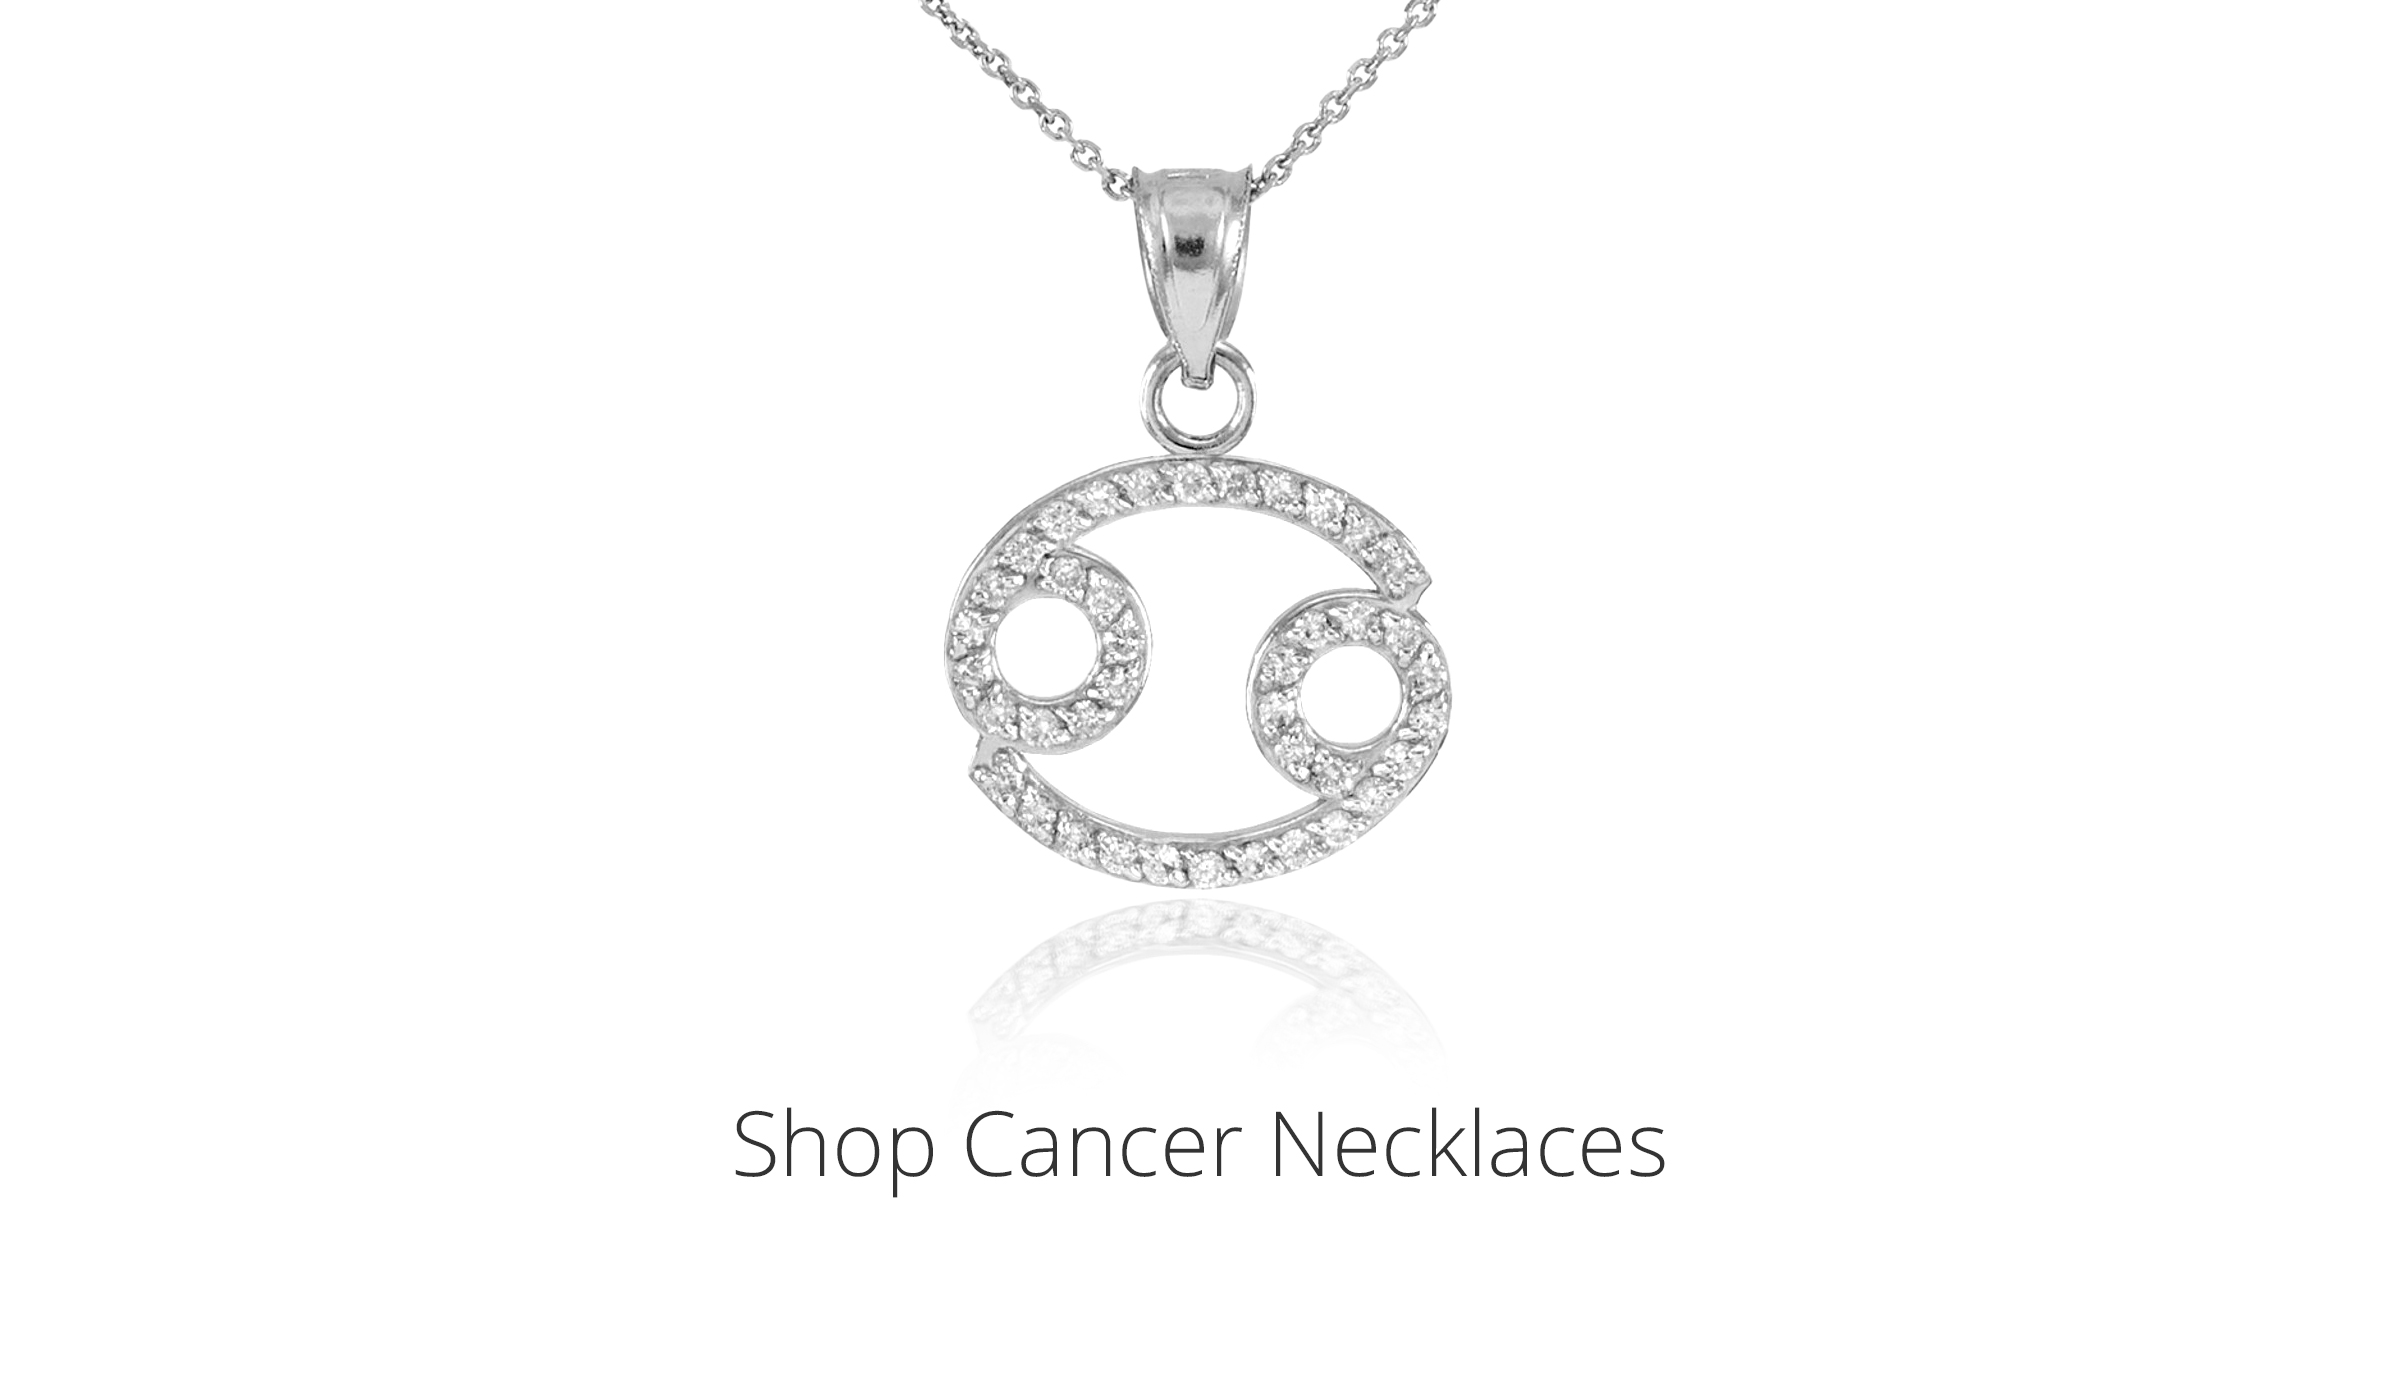 Shop Cancer Necklaces